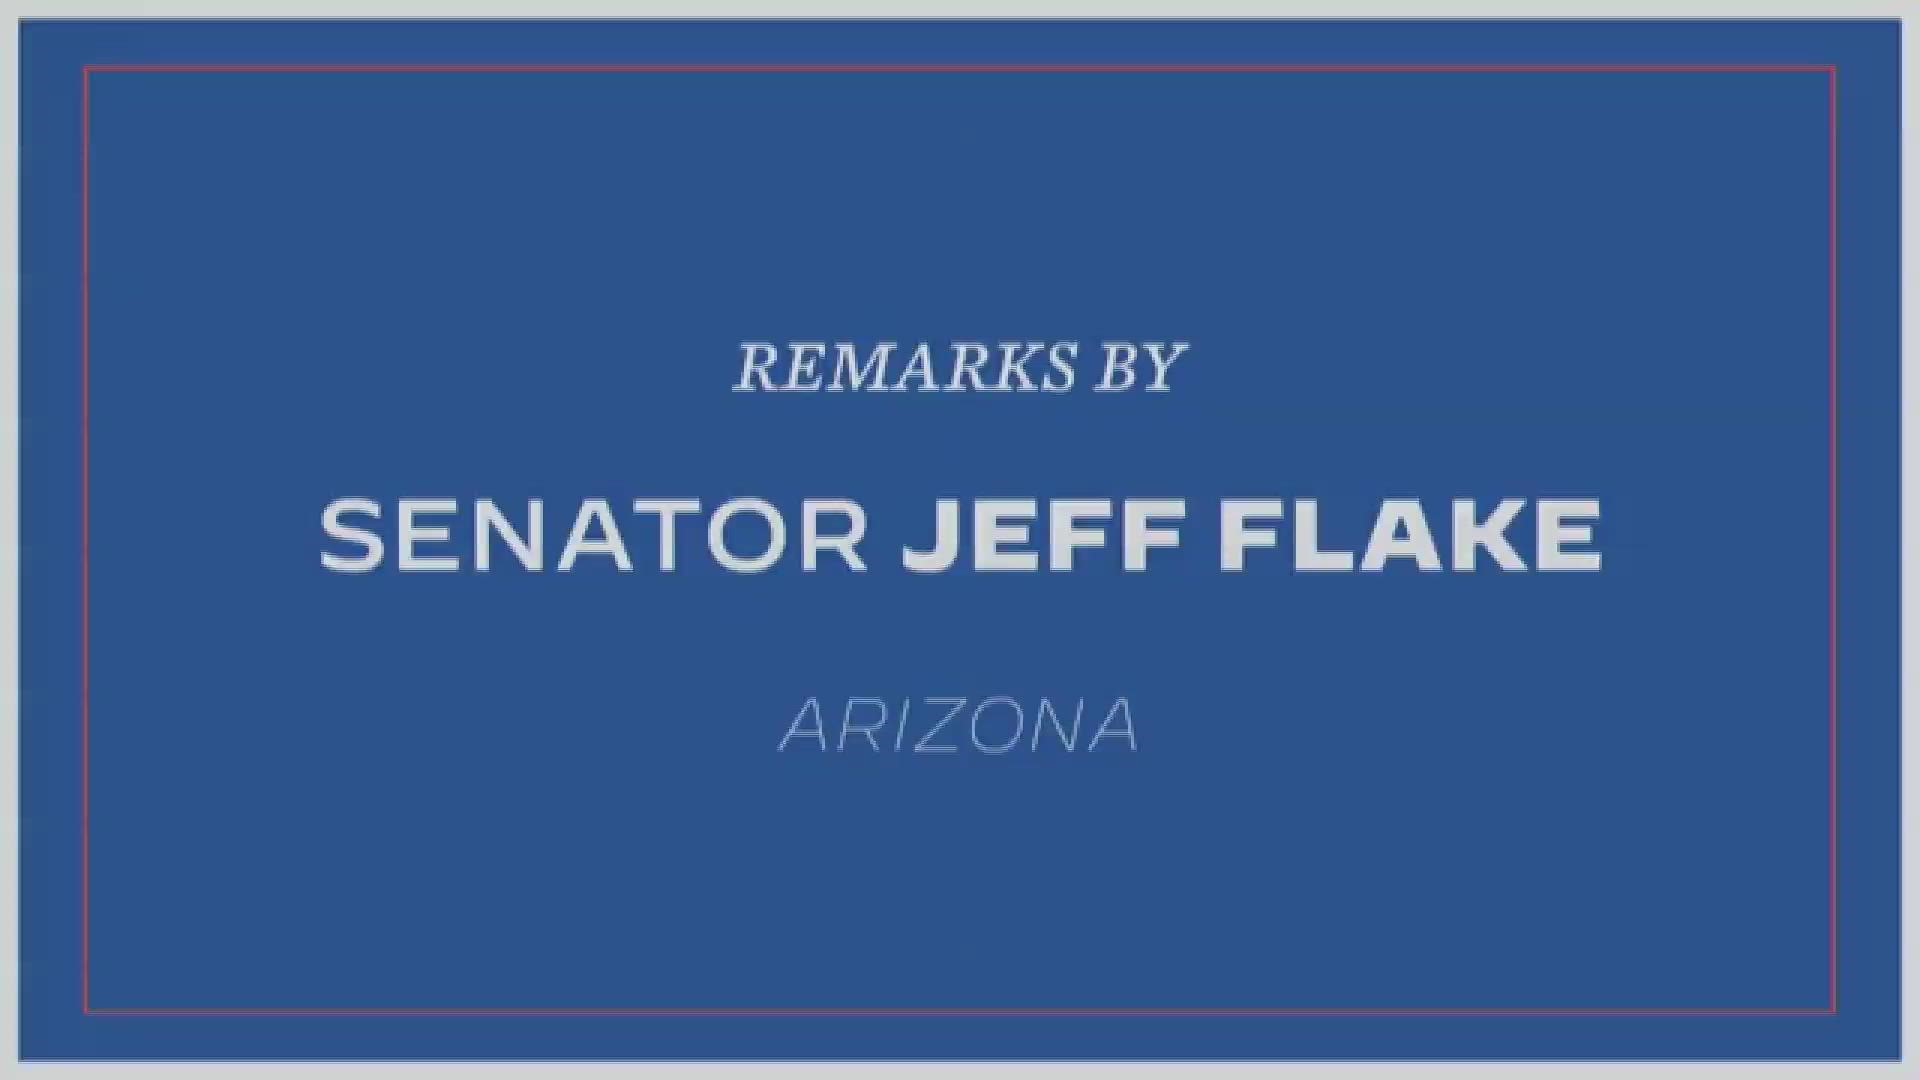 Jeff Flake, the former U.S. Senator, endorsed Joe Biden for president during his remarks Monday on social media. Here's video of his full speech.